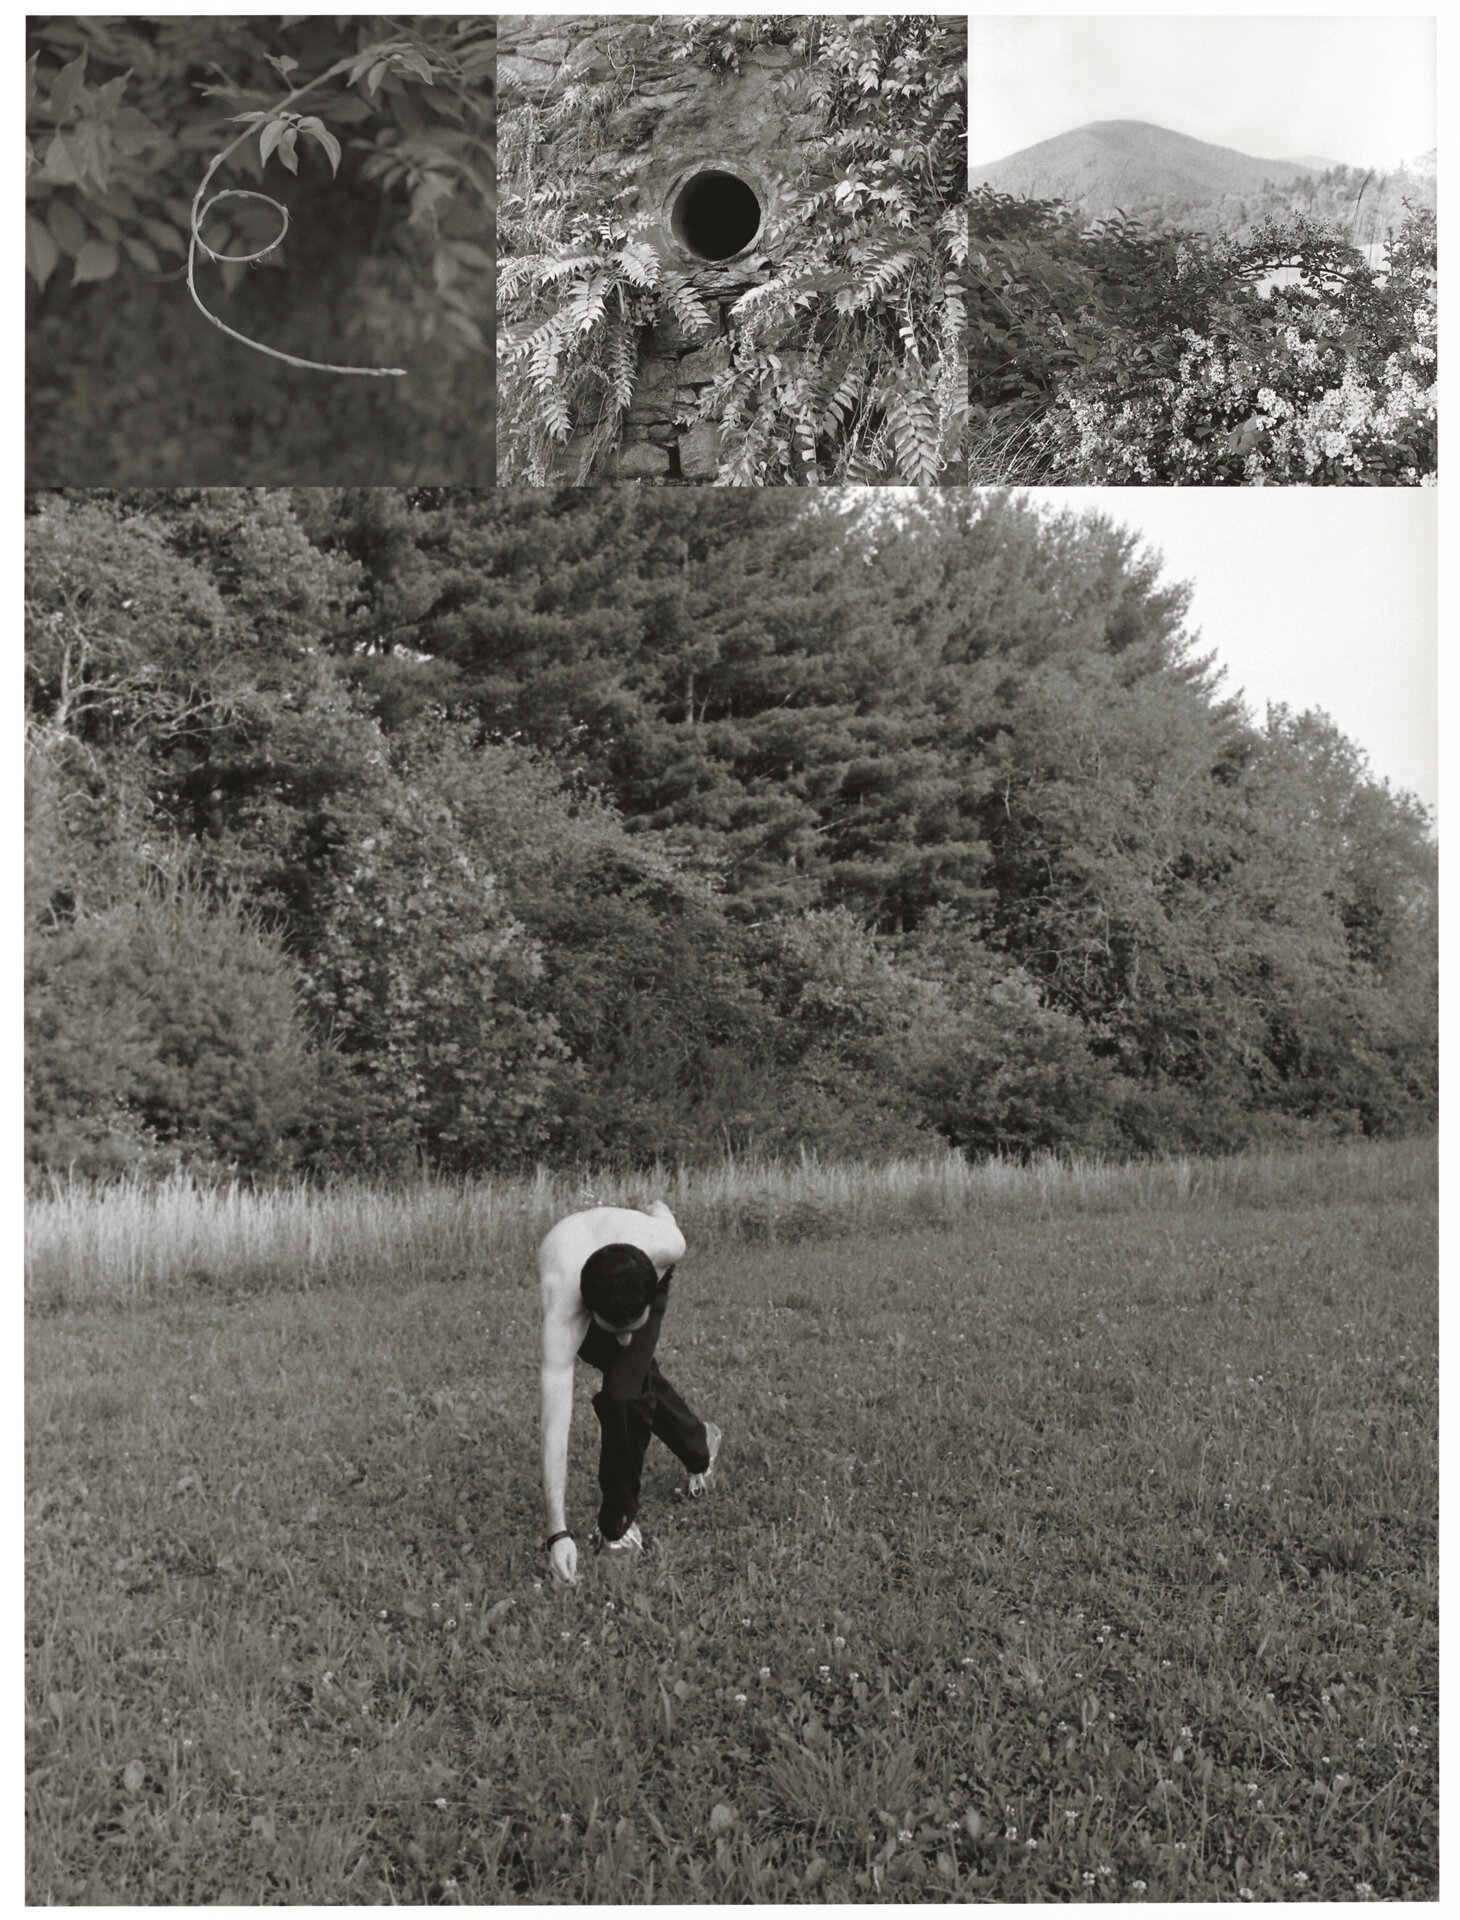   Bea Nettles  (American, b. 1946).  Dance , 2001, from  Return Trips.  Inkjet print. Collection of the artist. © Bea Nettles 